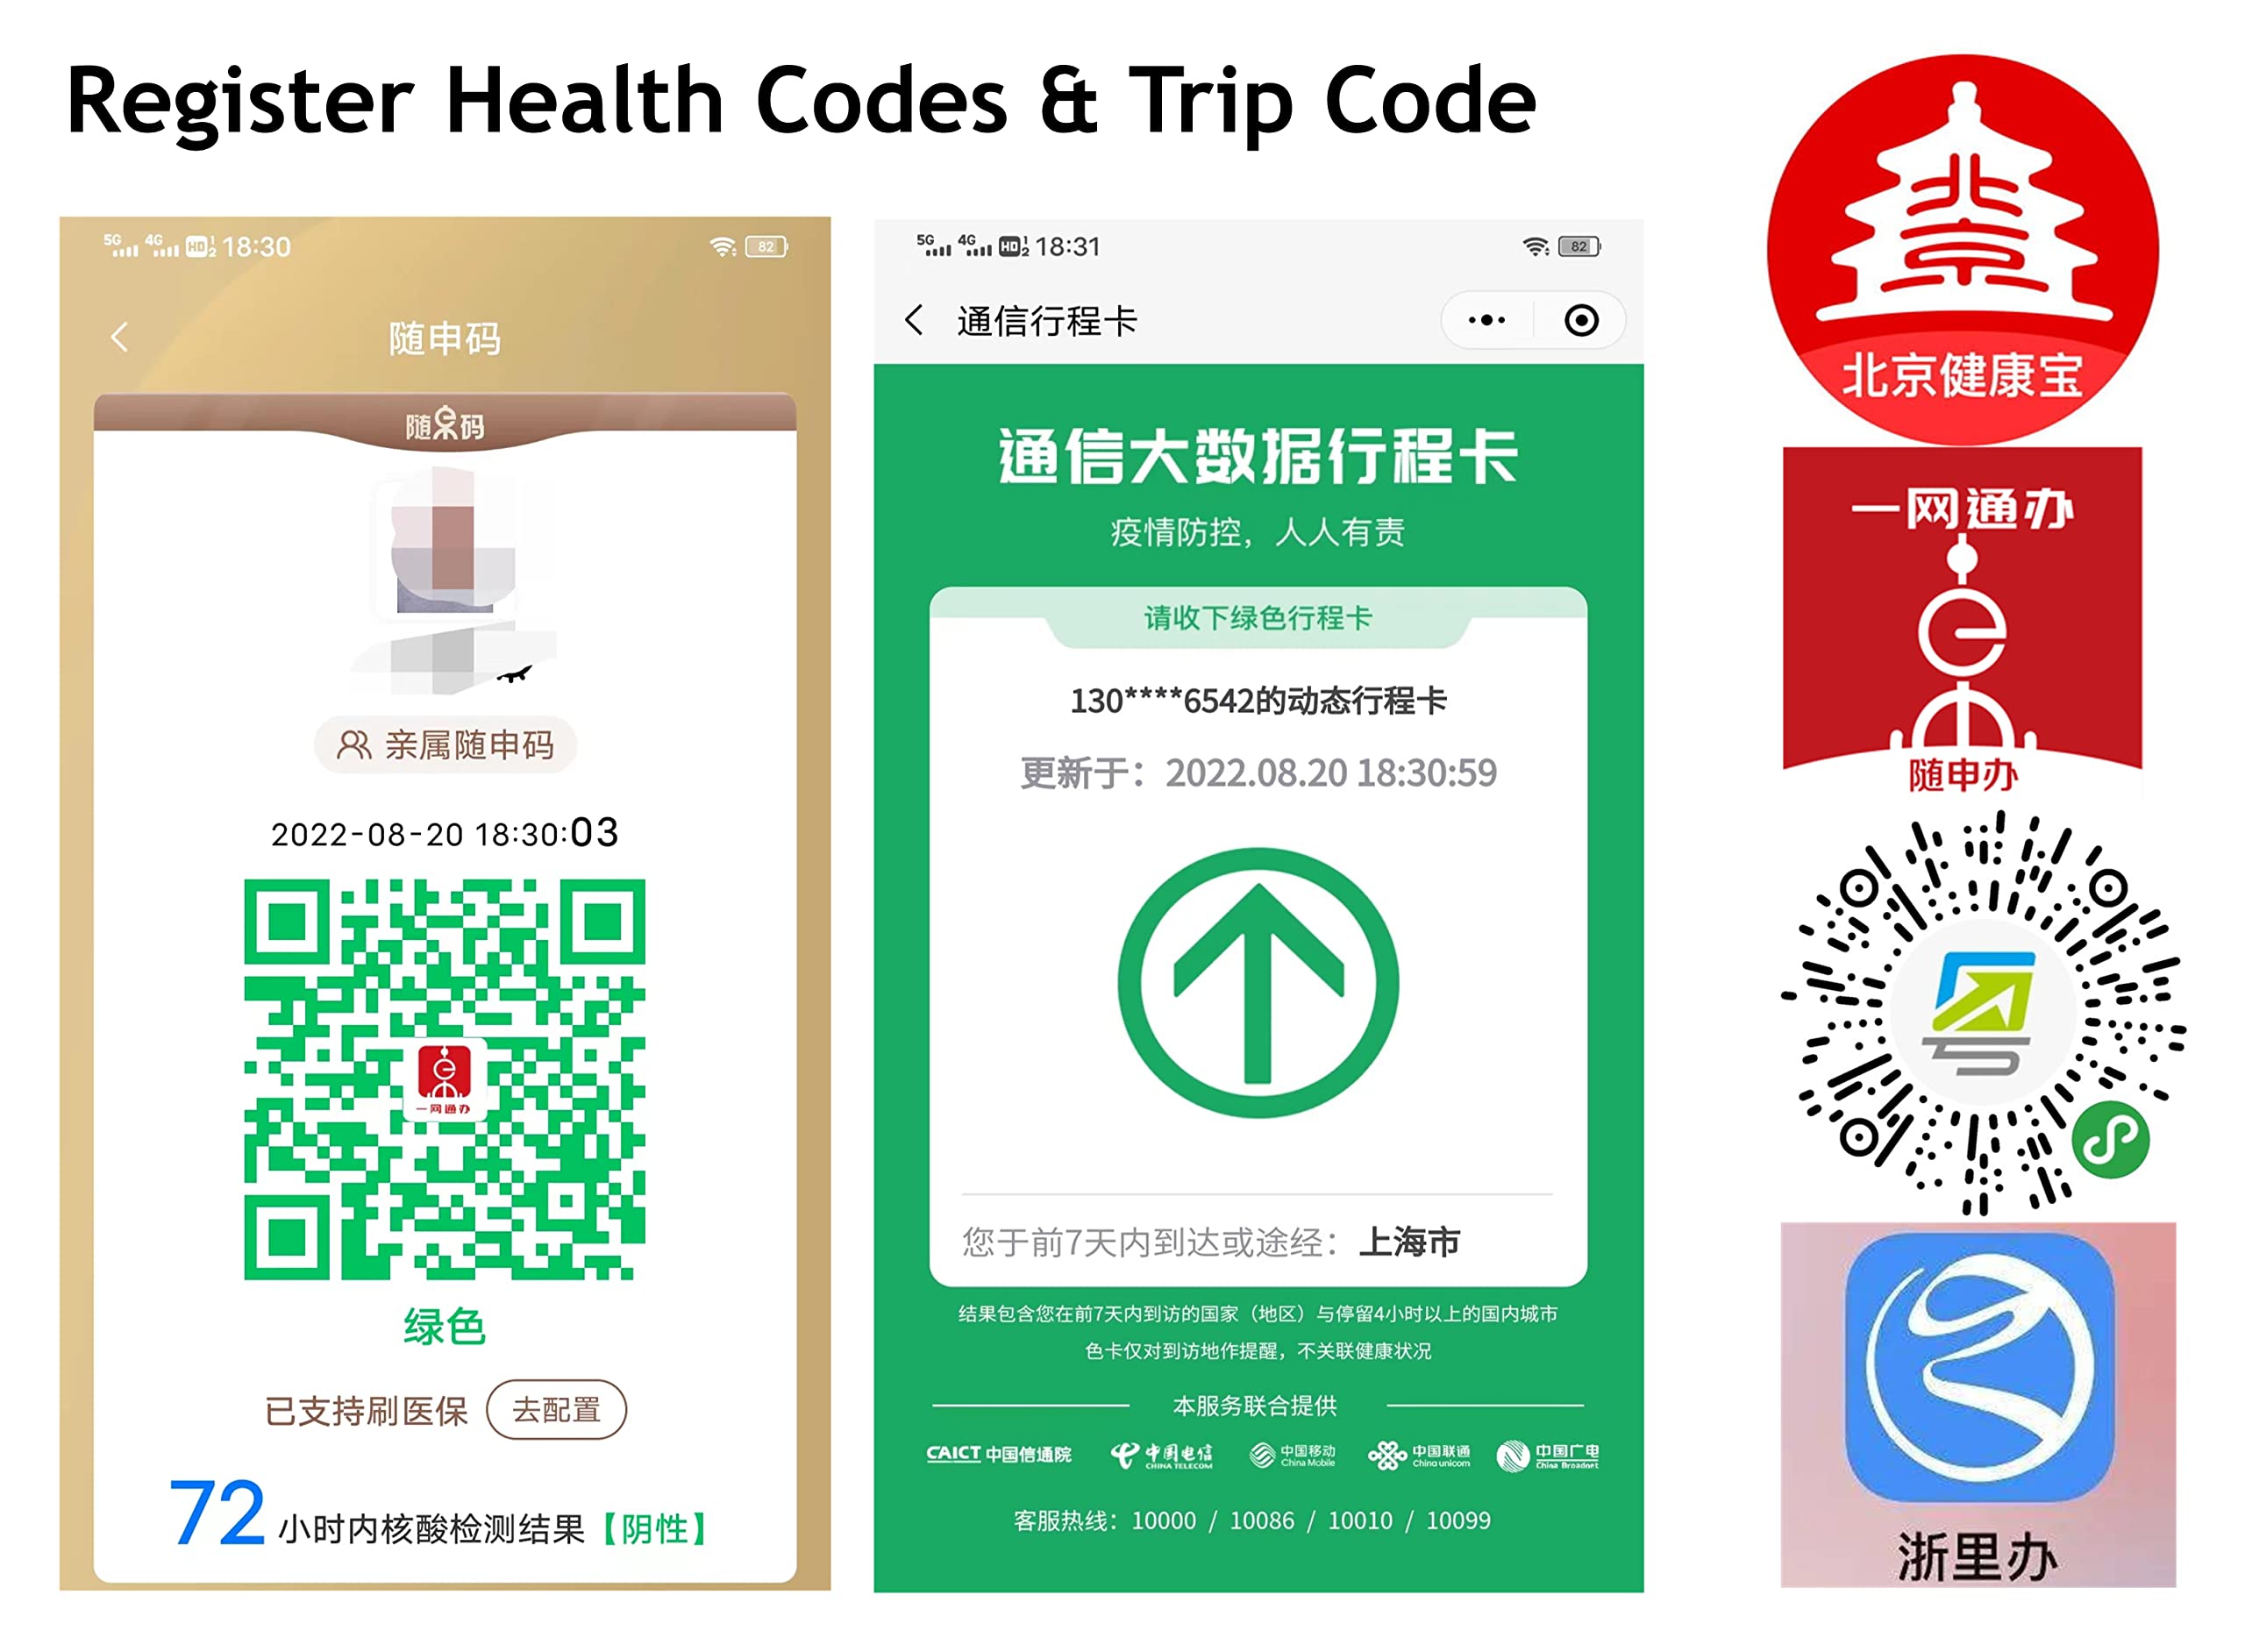 China Unicom Sim Card 5G Network 15Days 10GB Data, 100 Minutes Talk Plus 100 Texts